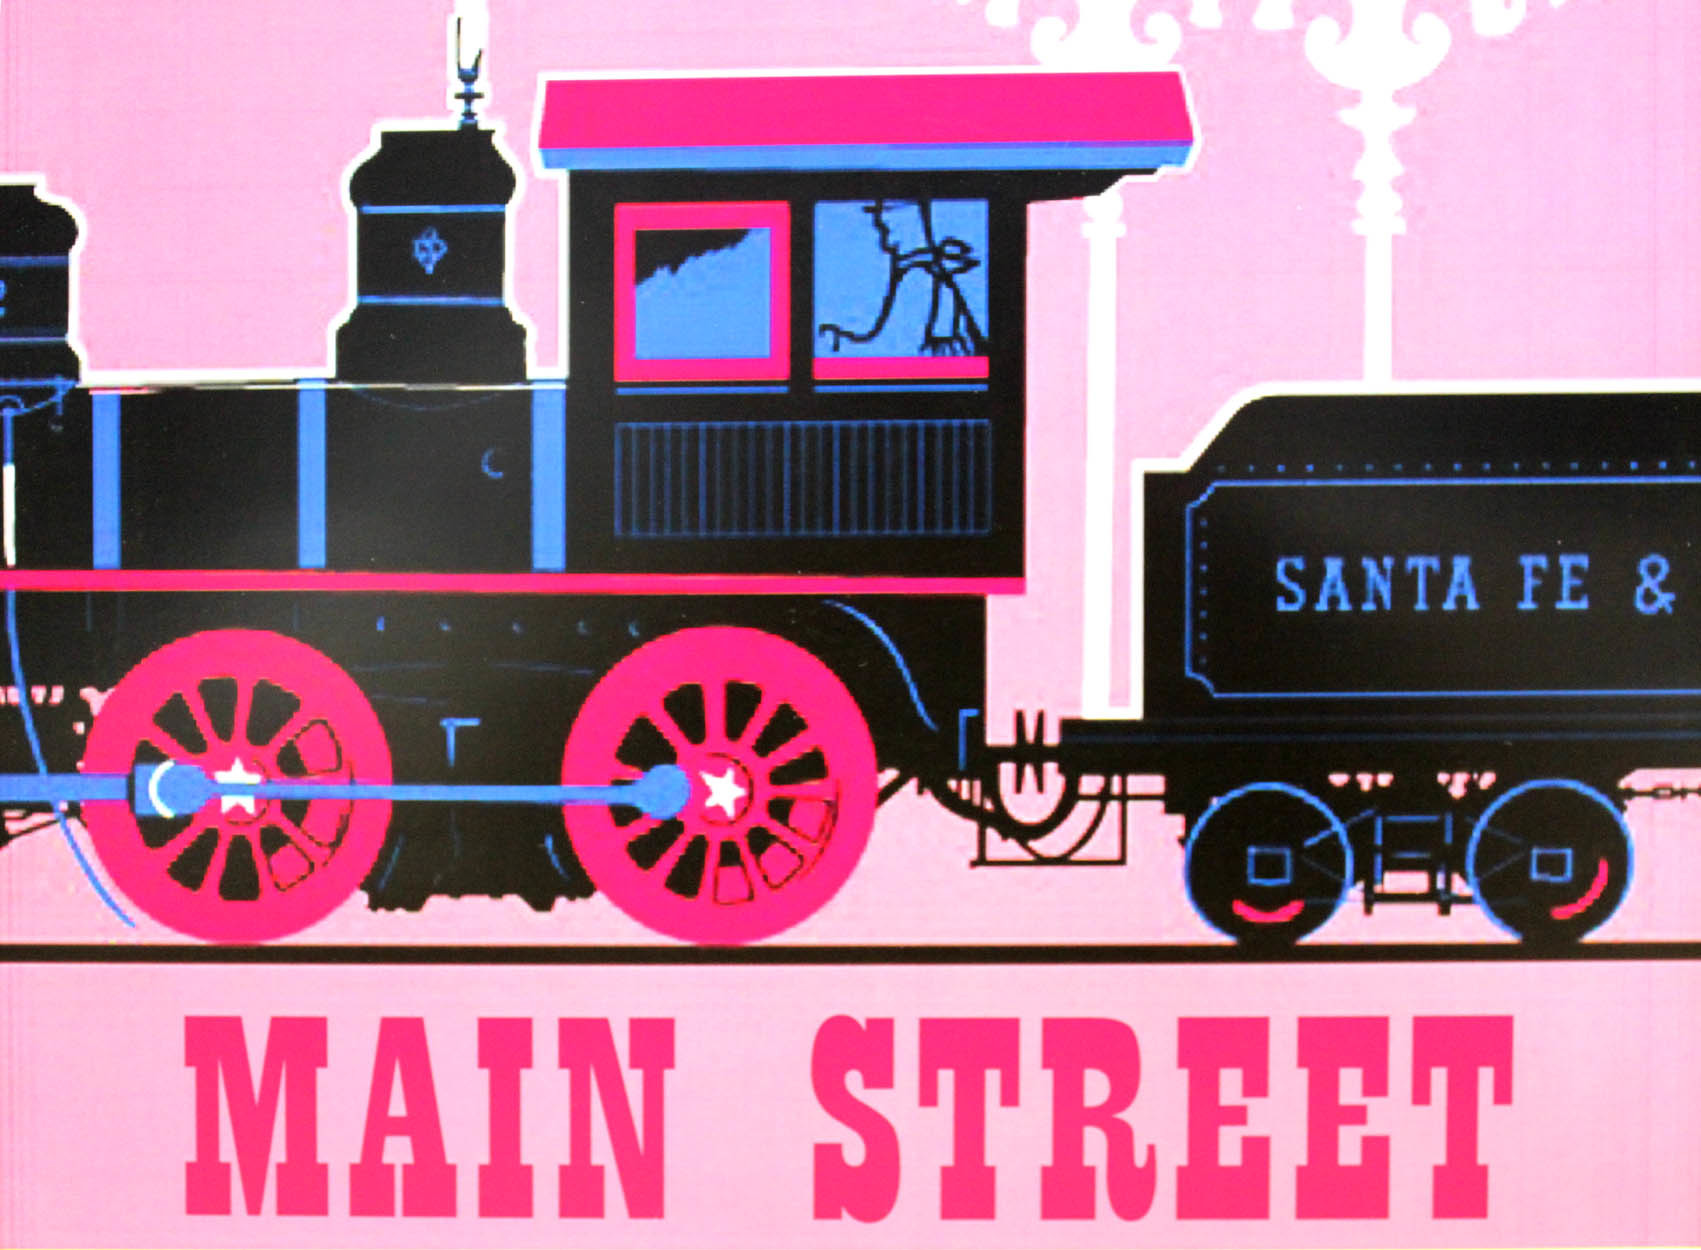 ディズニー テーマパーク メインストリートusa サンタフェ ディズニーランド鉄道 展示用フック付ポスター ディズニー絵画 ポスター